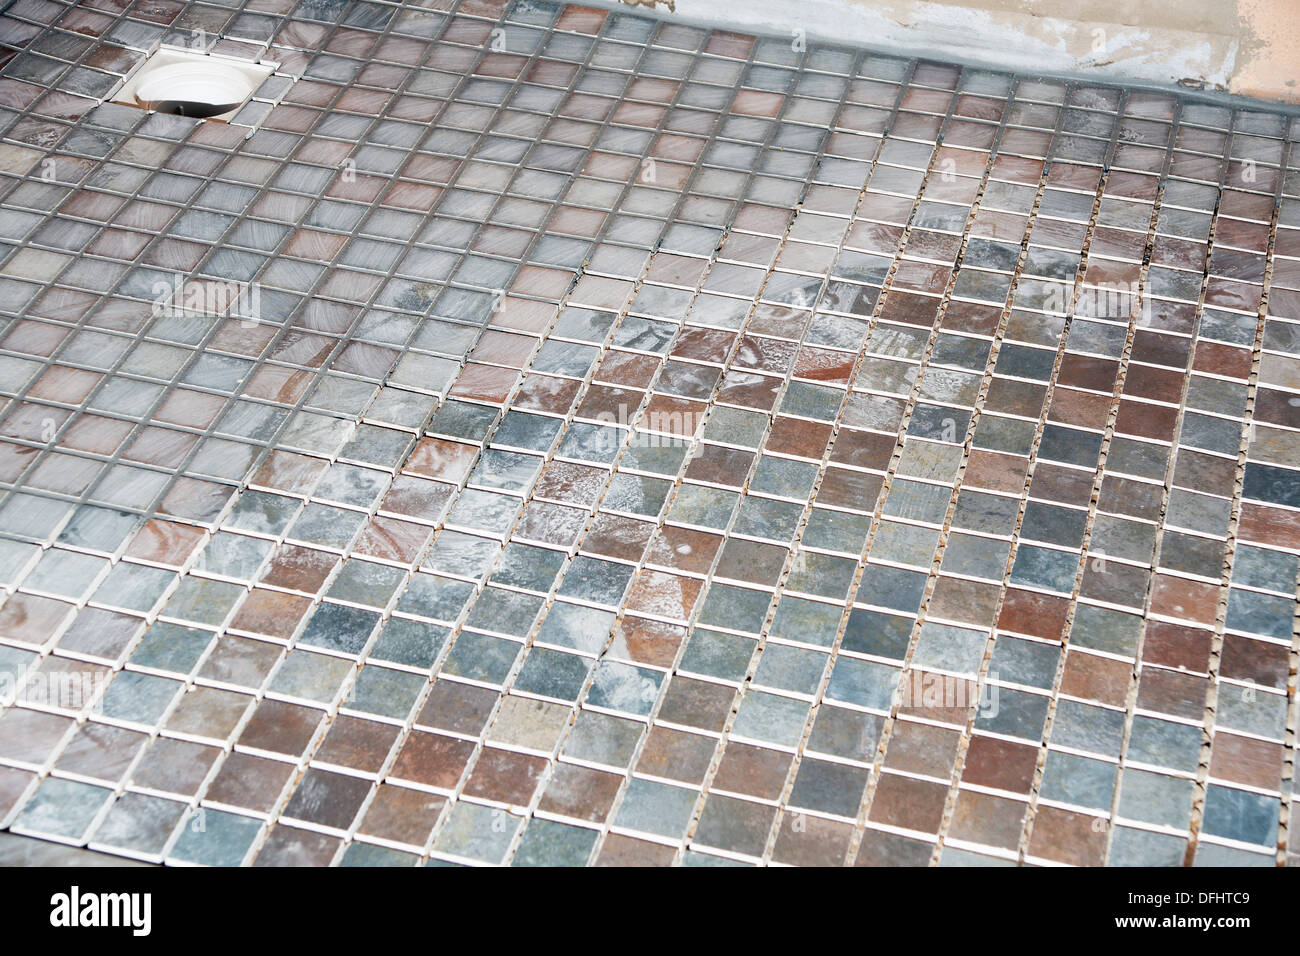 Non Slip Tiles Used For The Flooring In A Wet Room Shower